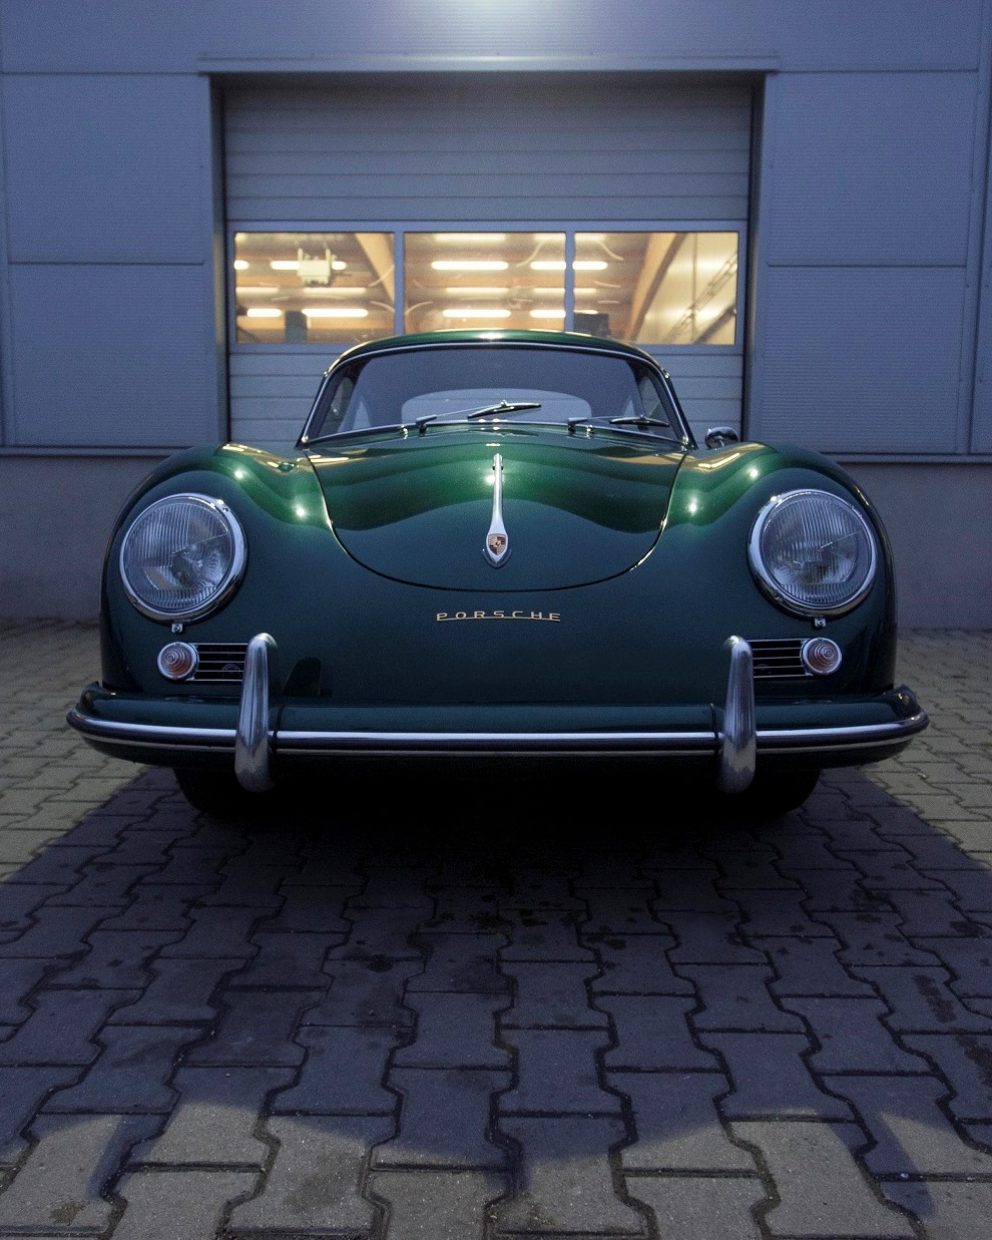 Grüner Porsche 356A von vorne